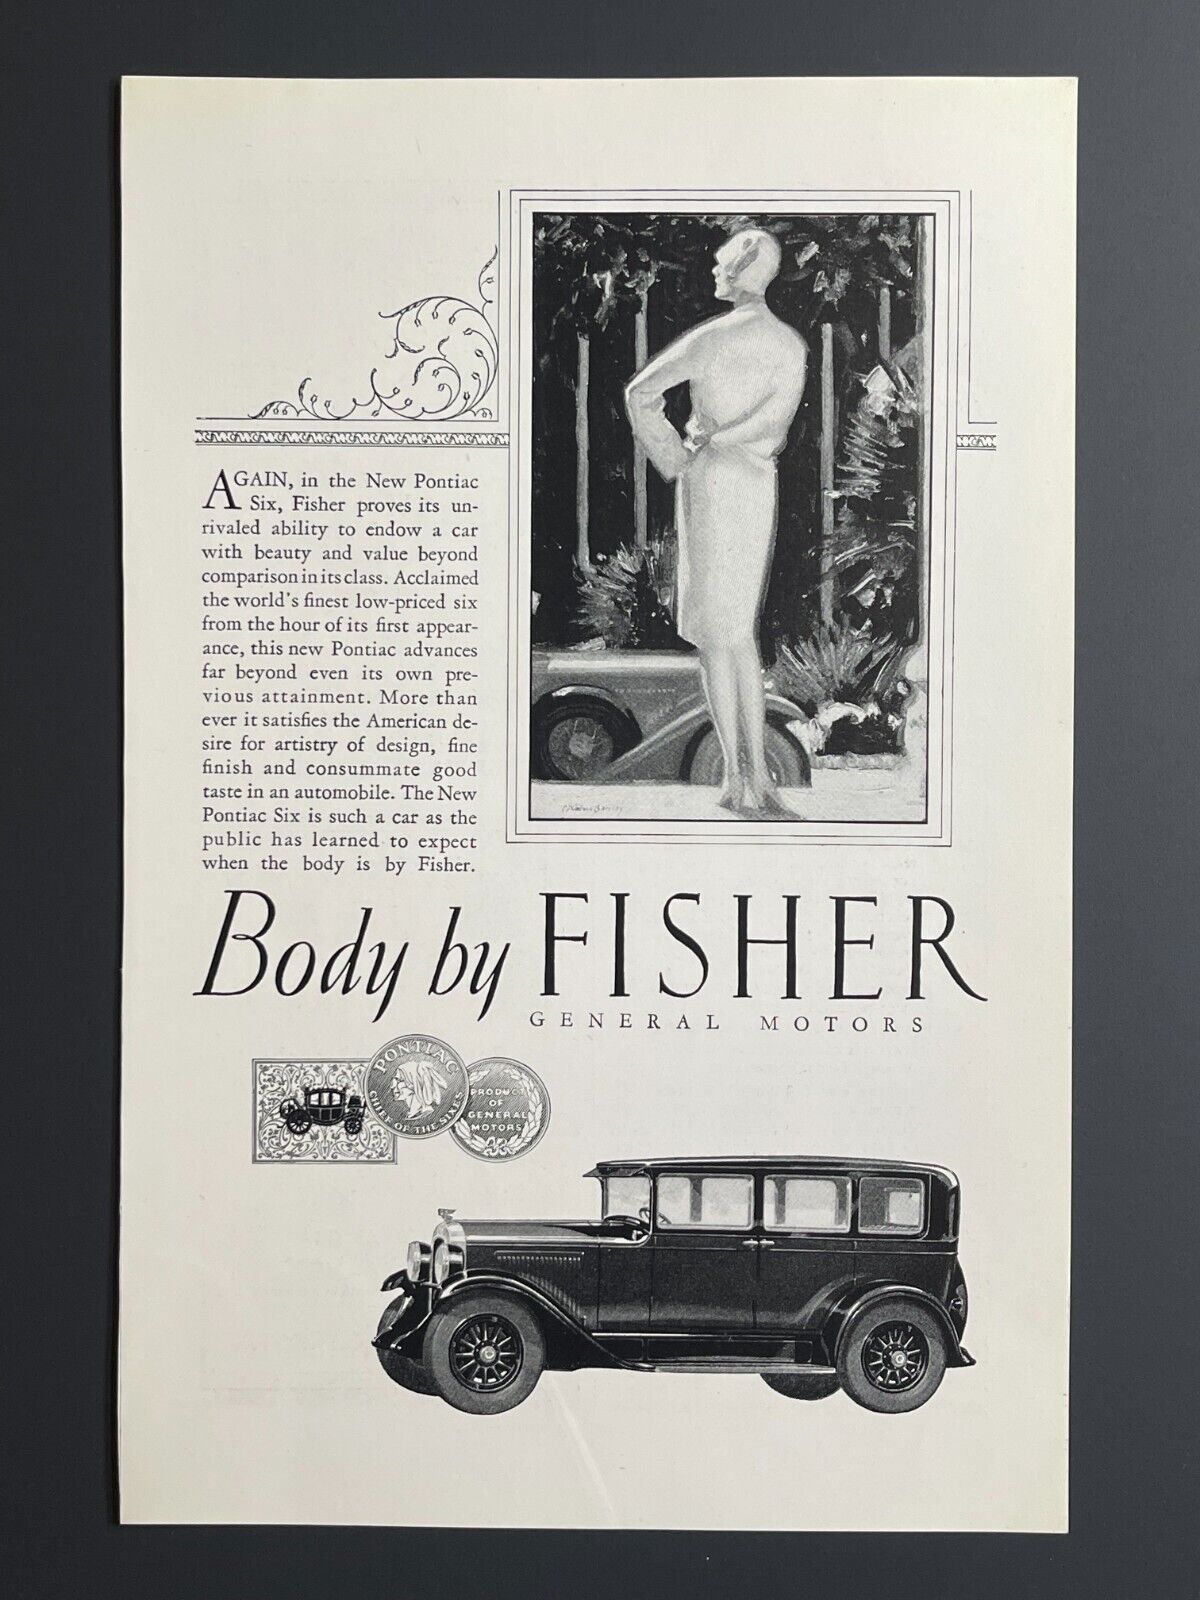 1927 General Motors Body By Fisher Car - Original Print Advertisement (10 x 6.5)